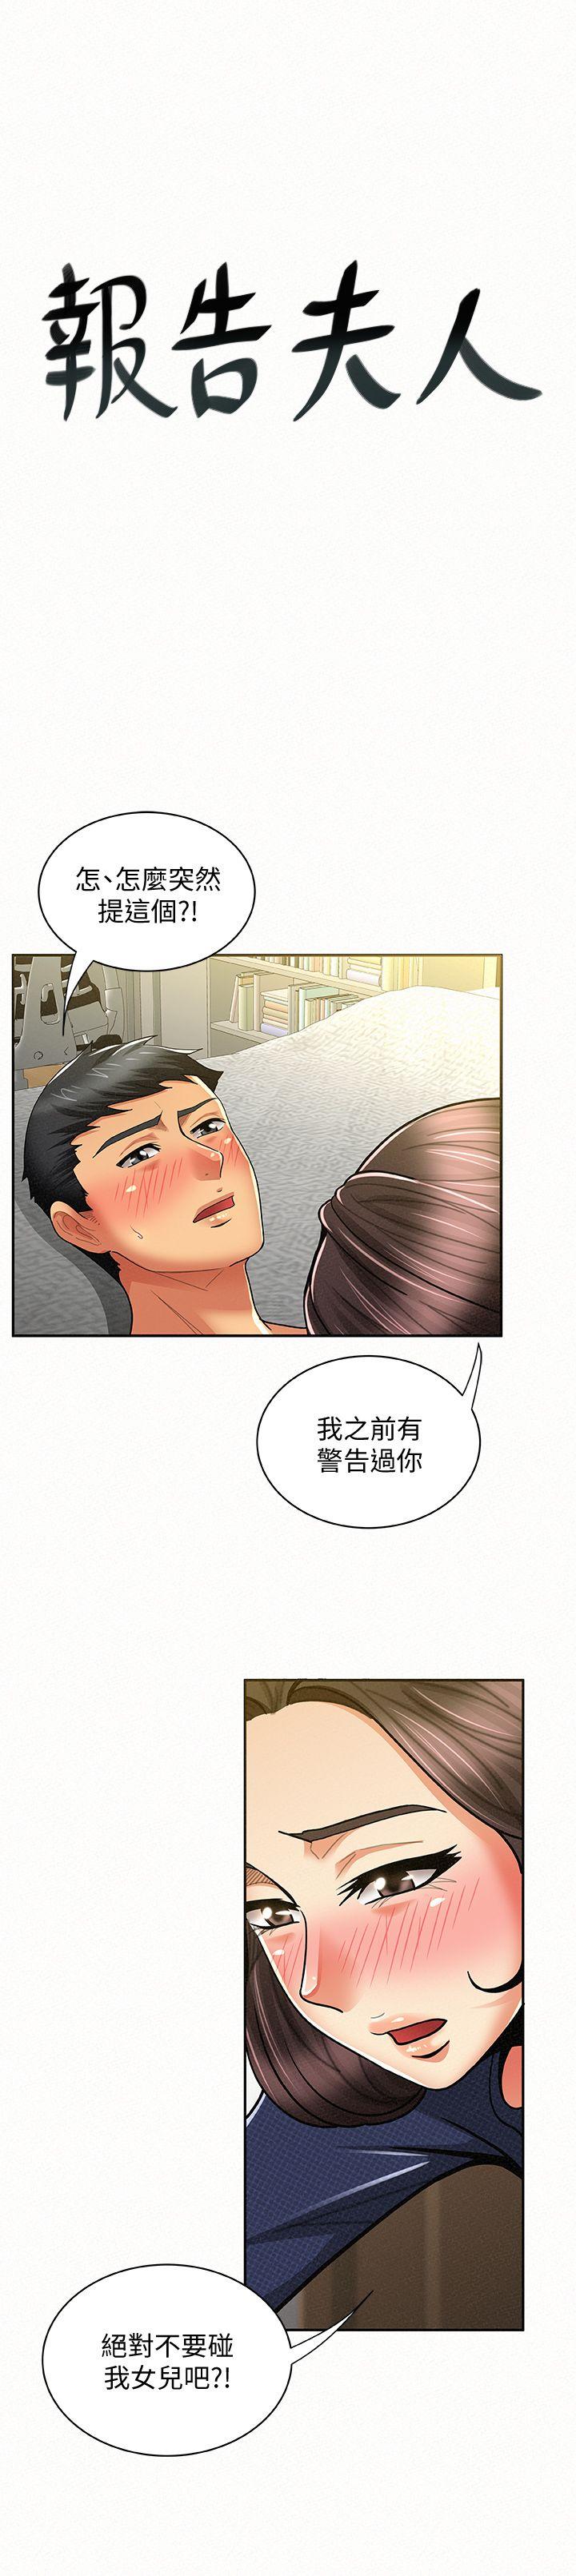 韩国污漫画 報告夫人 第13话-夫人的嫉妒心 1